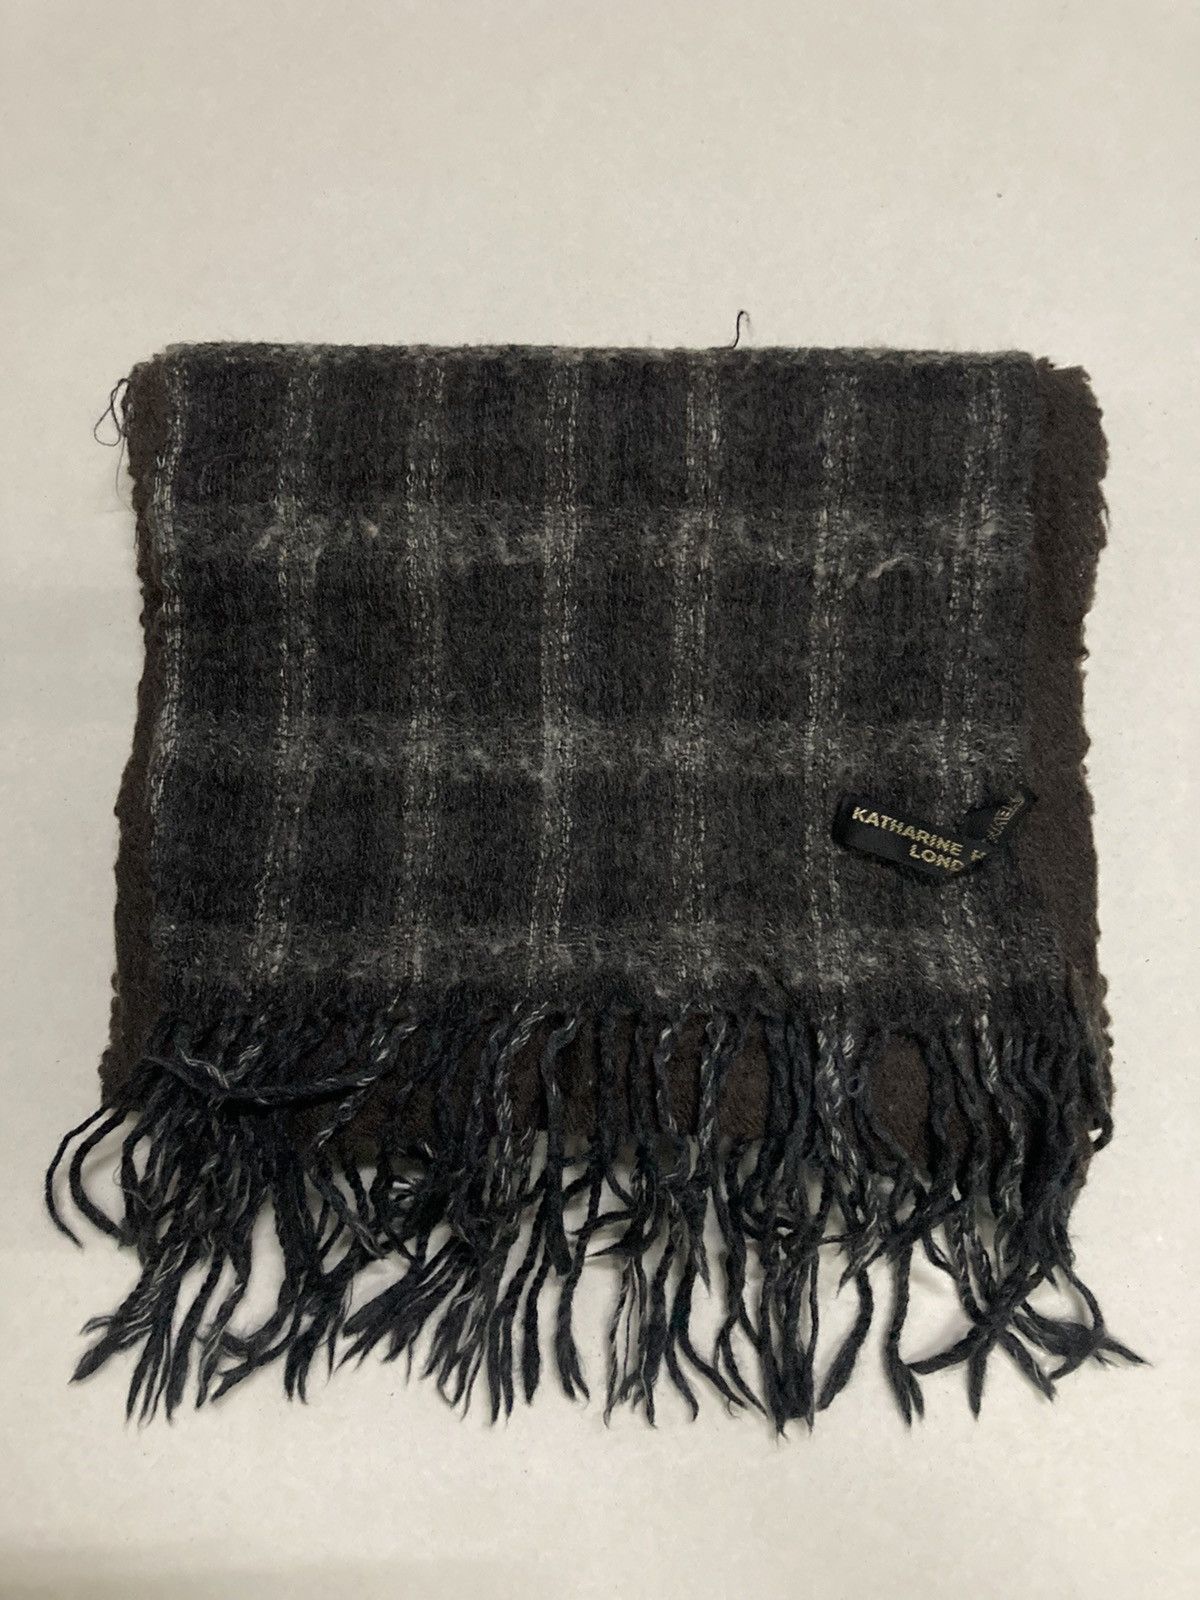 Katharine Hamnett London Wool Muffler Scarf - 6